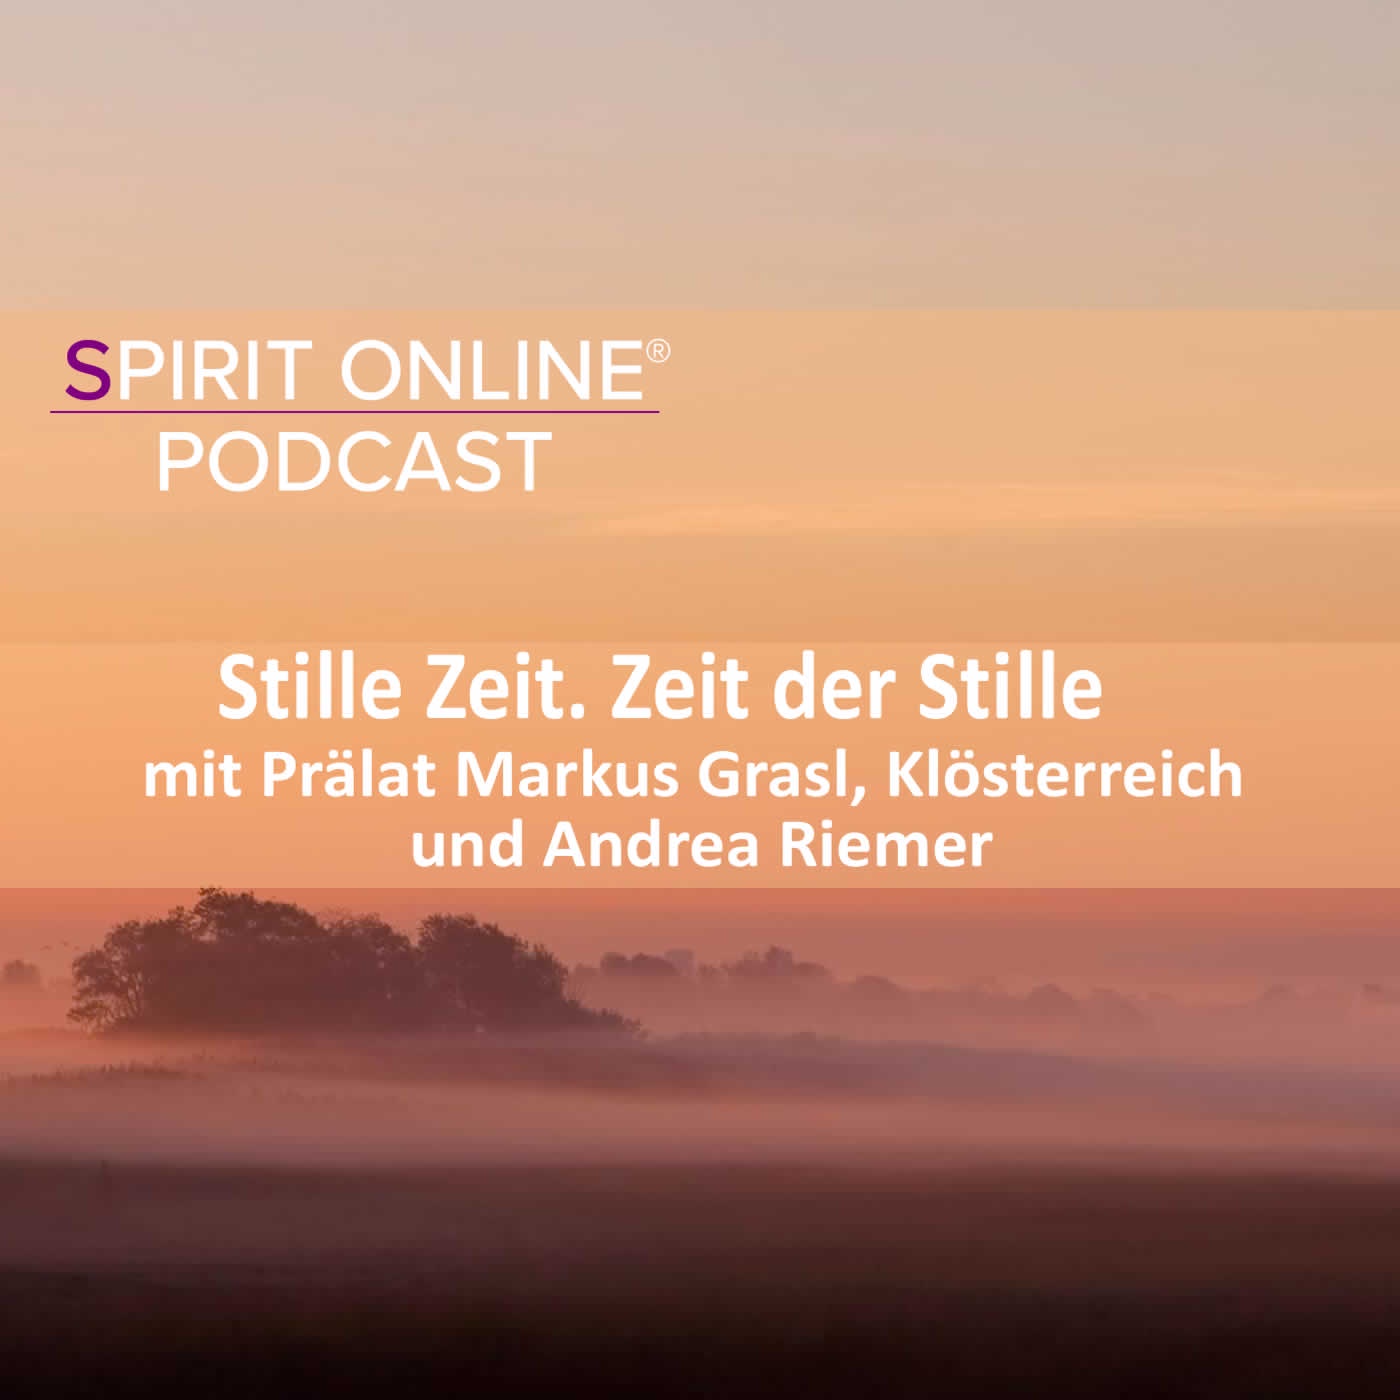 Zeit der Stille mit Prälat Markus Grasl - Klösterreich